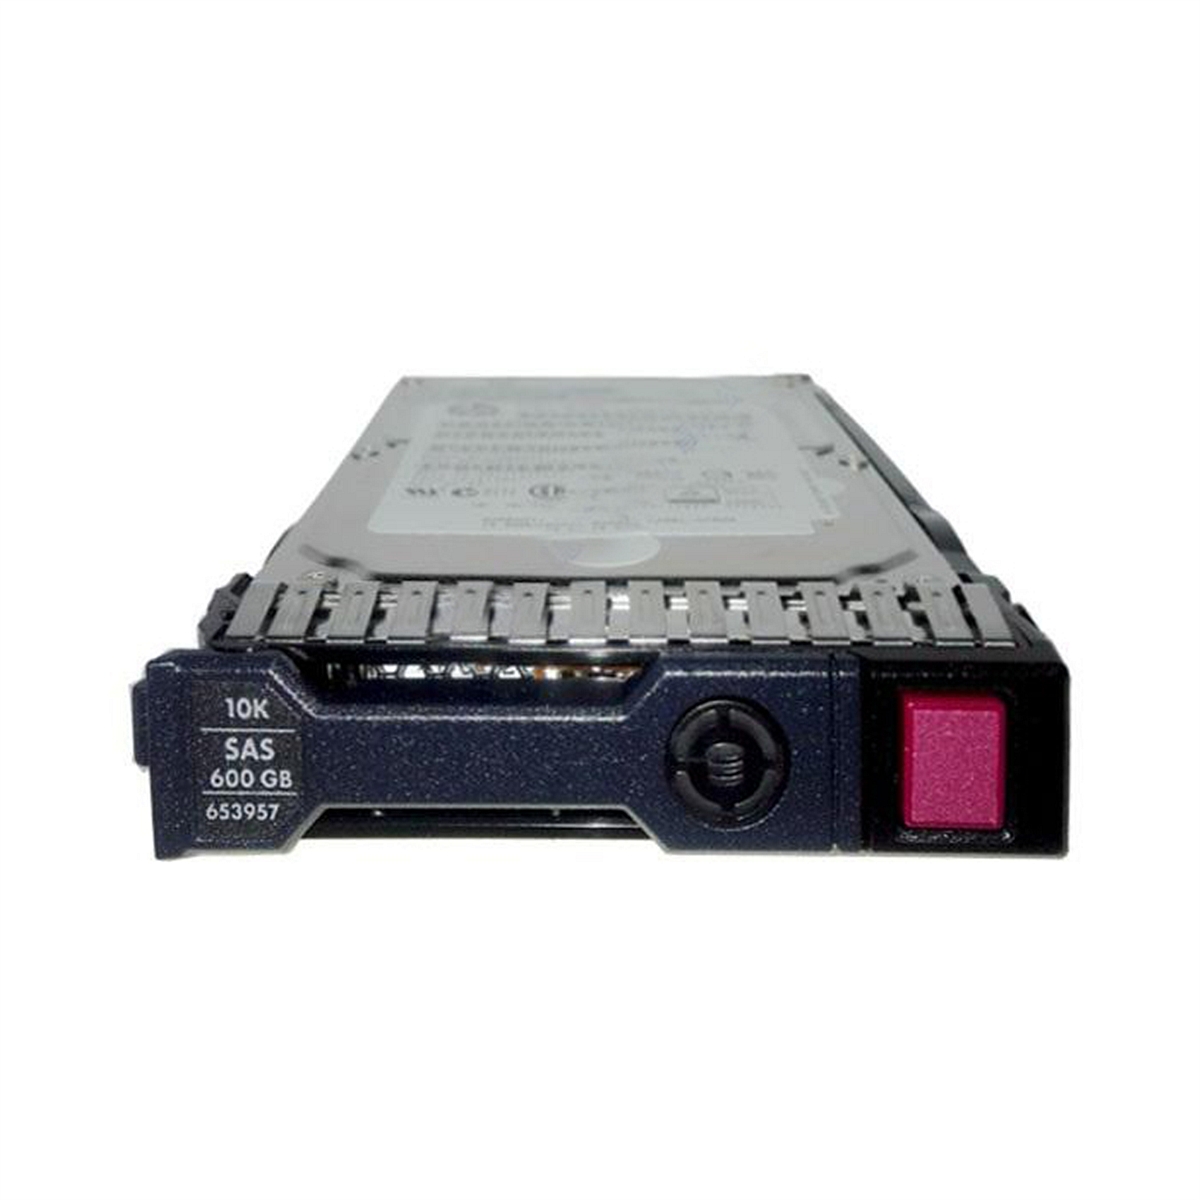 惠普HP653957服务器硬盘(个)